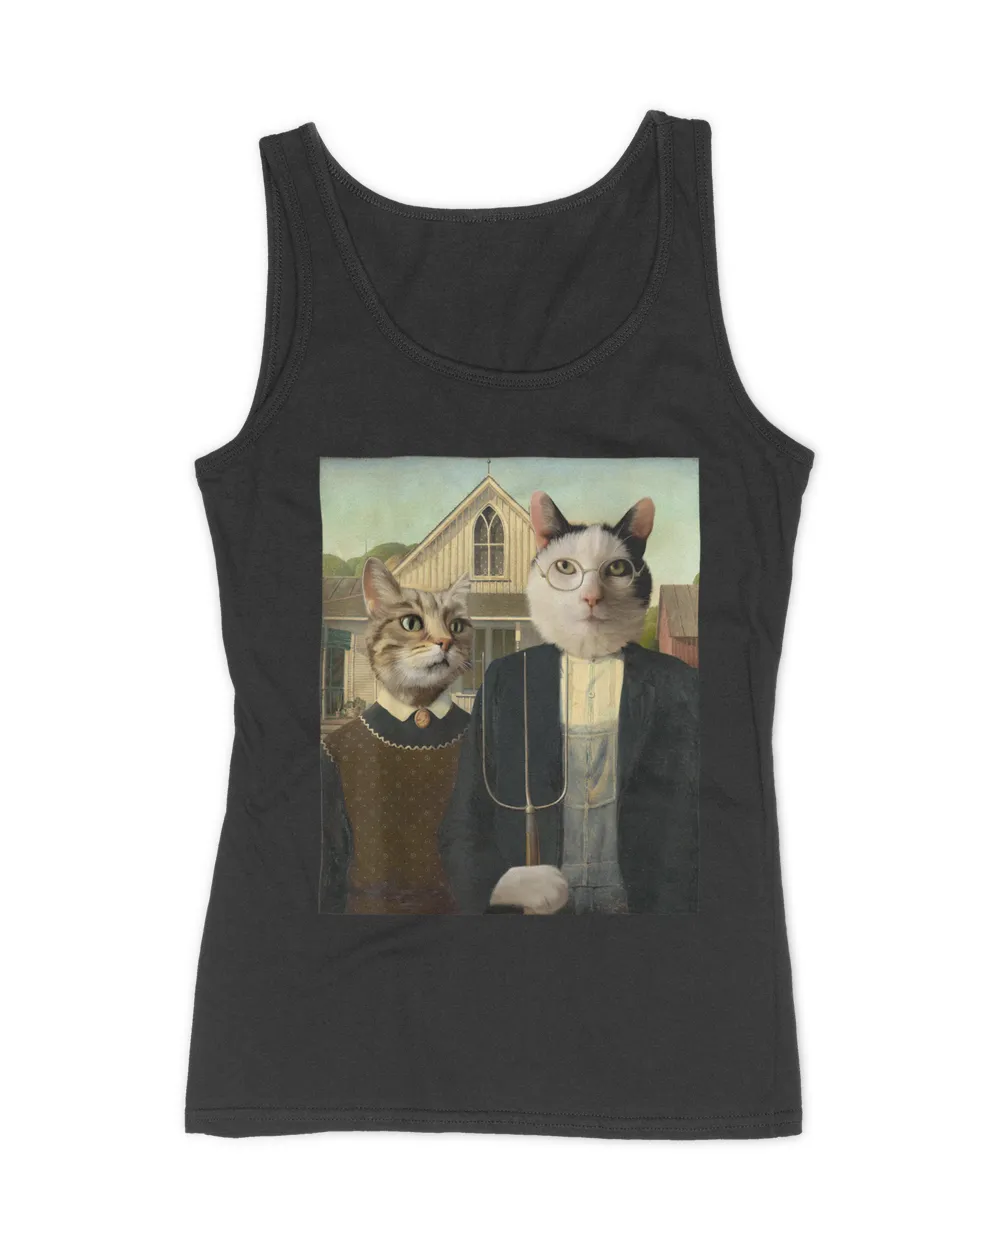 Funny Cat Tshirt, Cat Humor  HOC200423A3